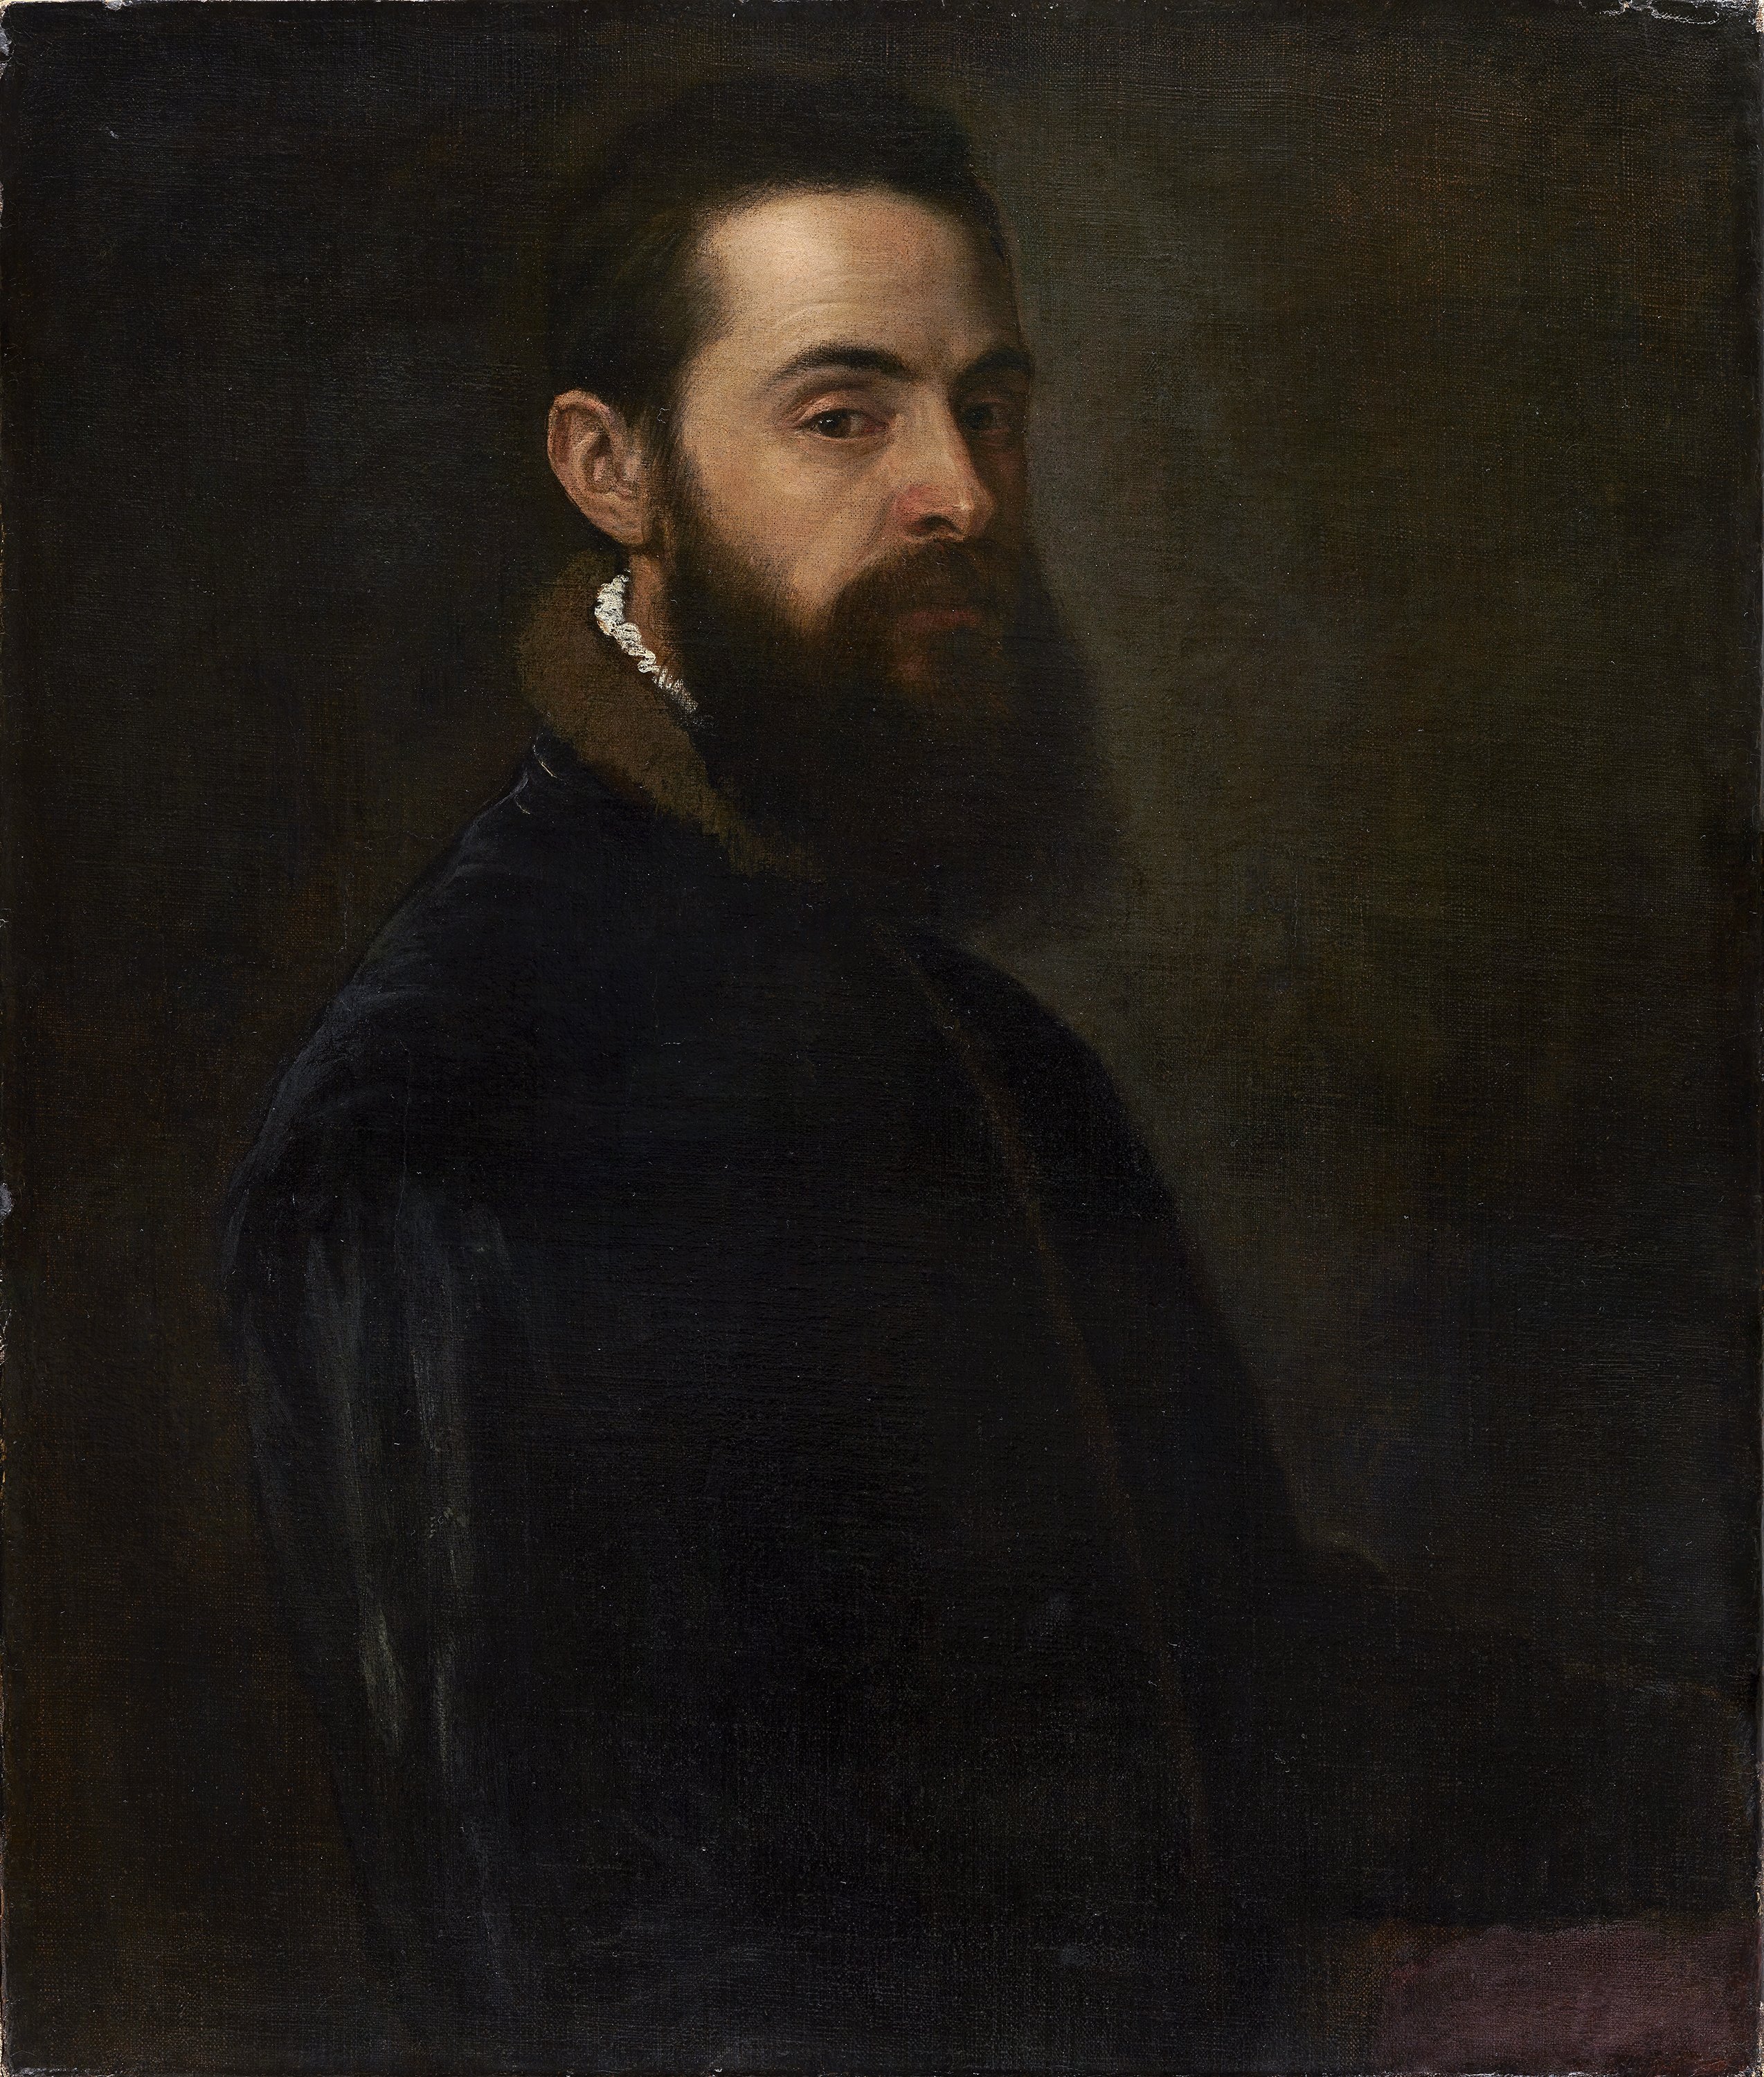 Portrait of Antonio Anselmi. Retrato de Antonio Anselmi, c. 1550